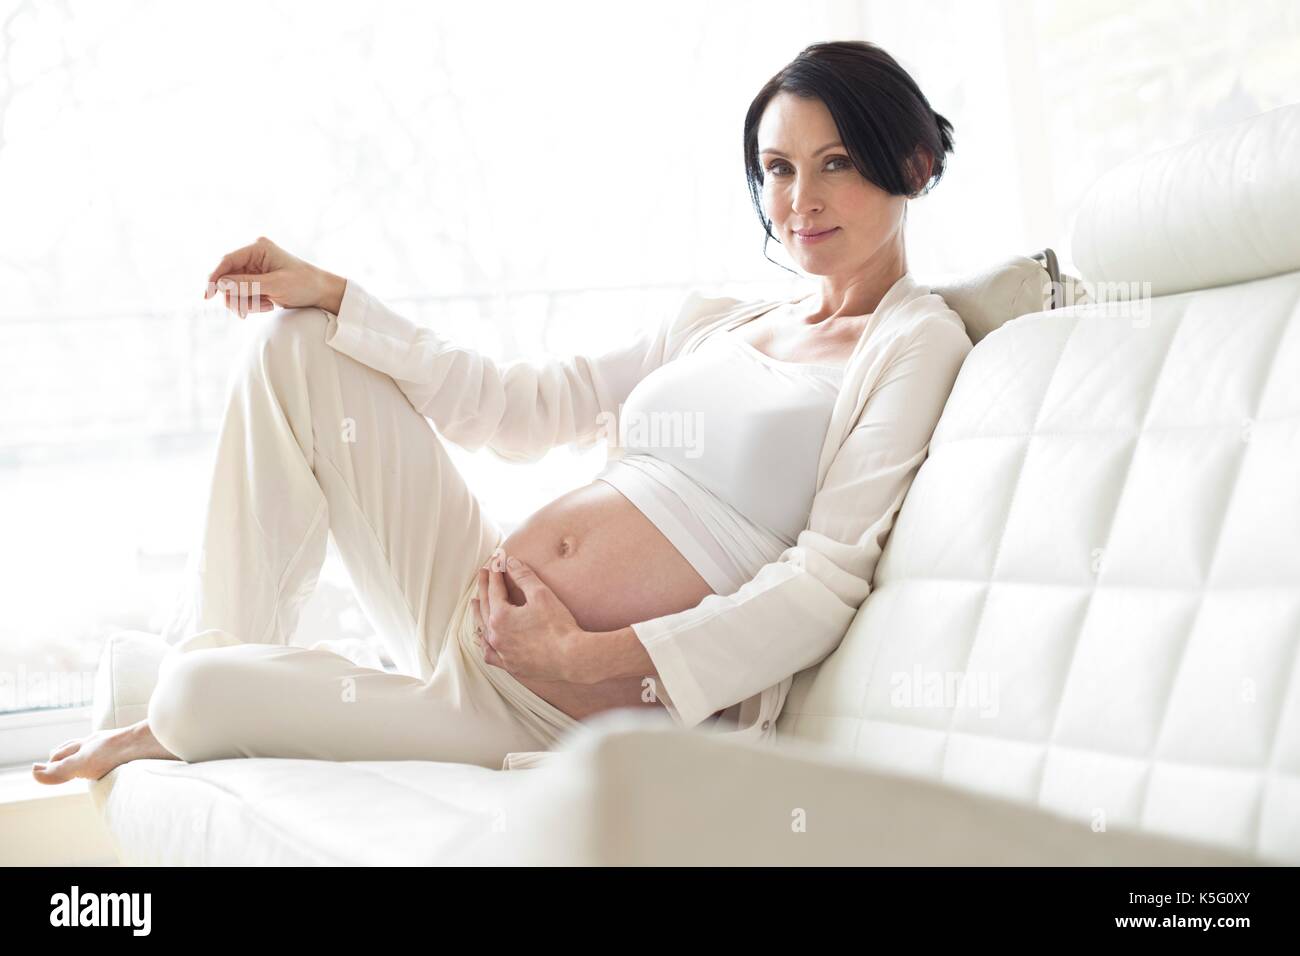 Pregnant woman sitting on sofa touching tummy. Stock Photo